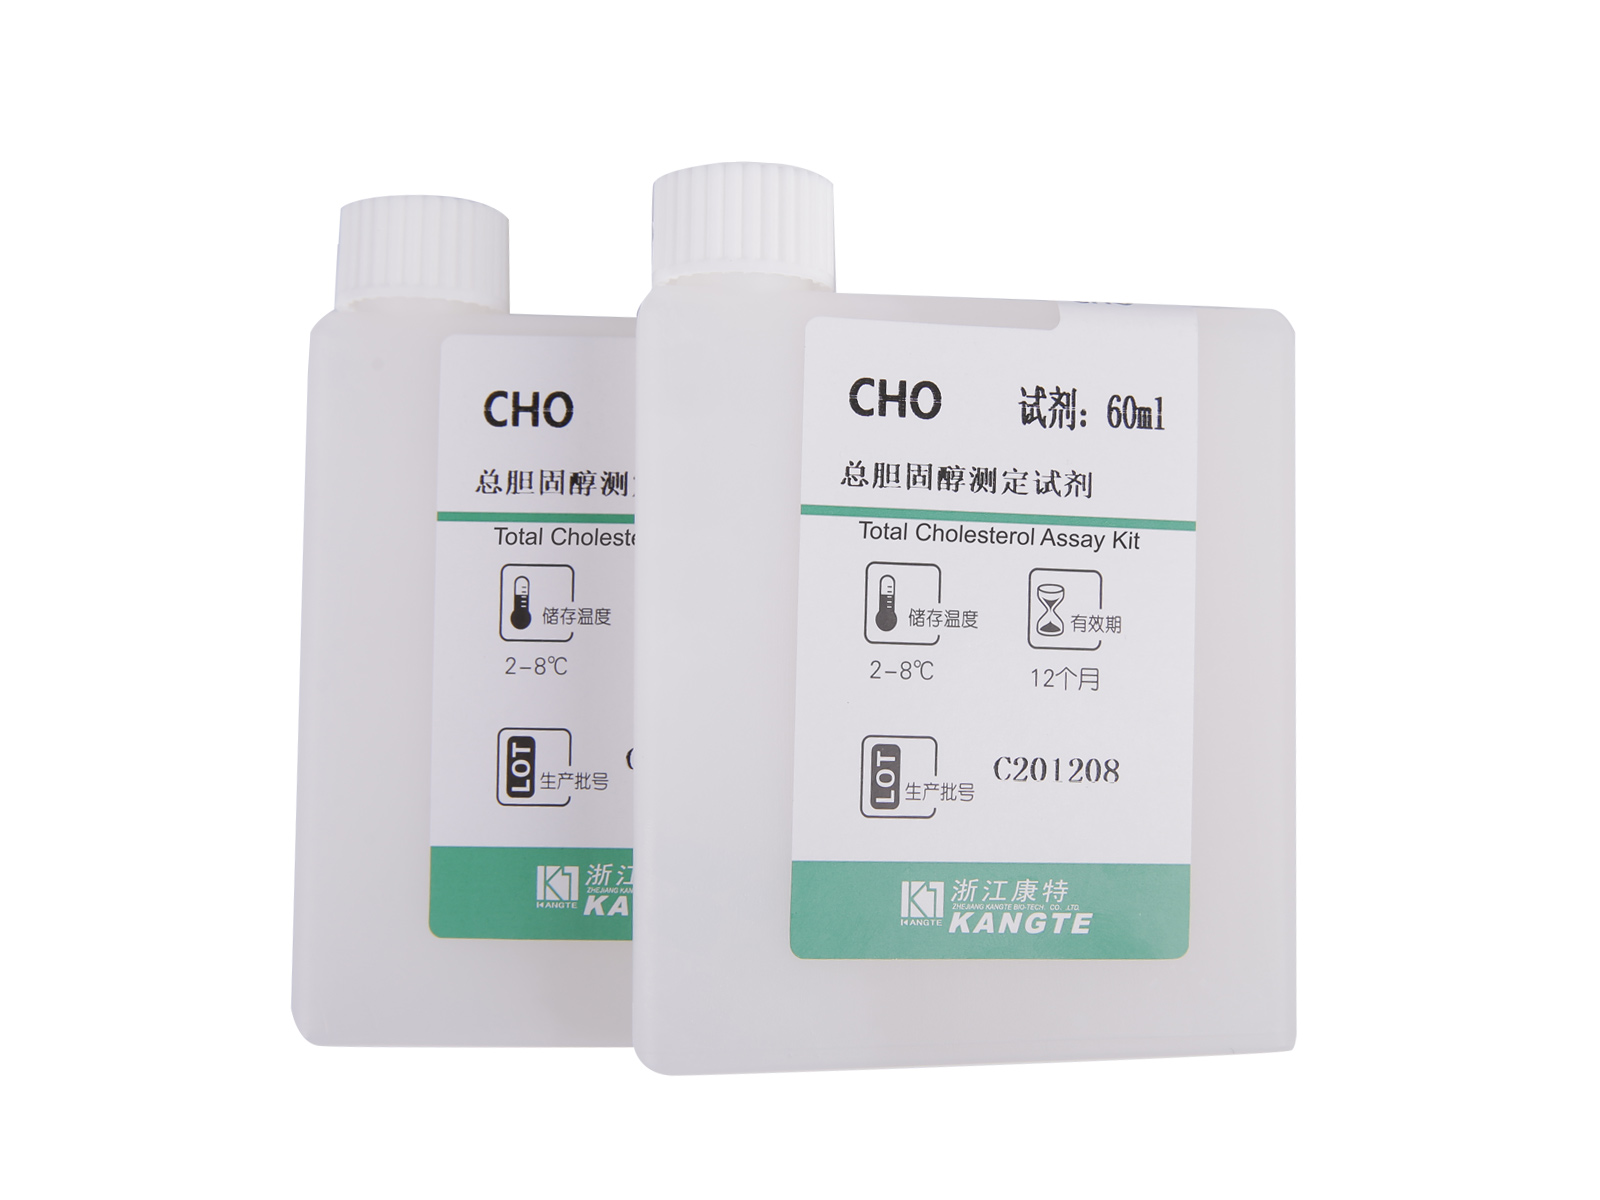 【CHO】Kit de dosage du cholestérol total (méthode CHOD-PAP)